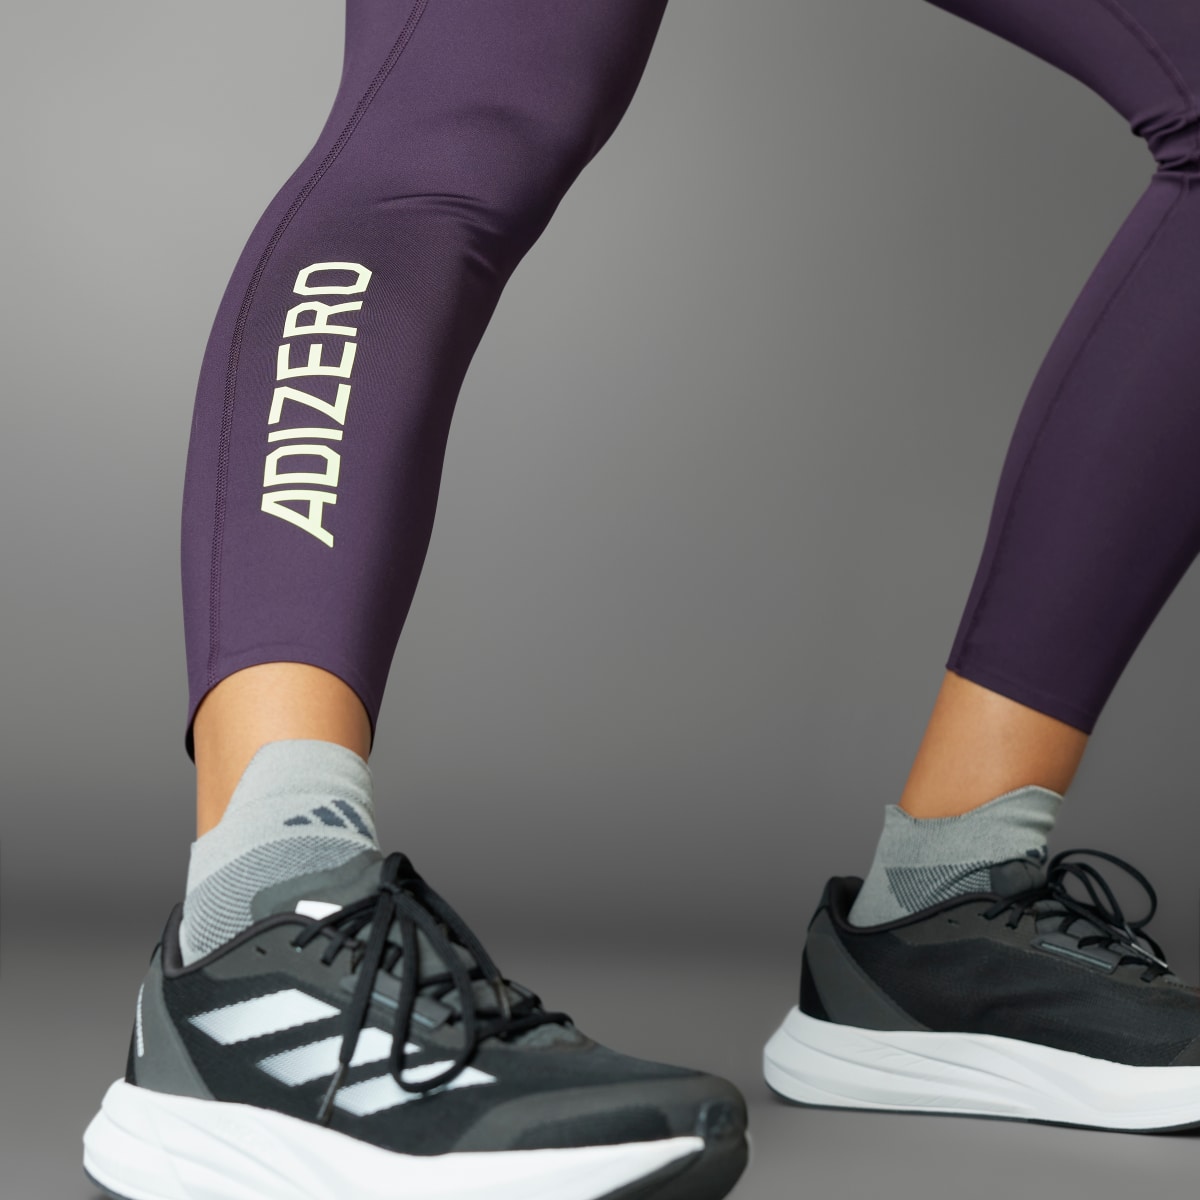 Adidas Legging 7/8 Adizero. 5